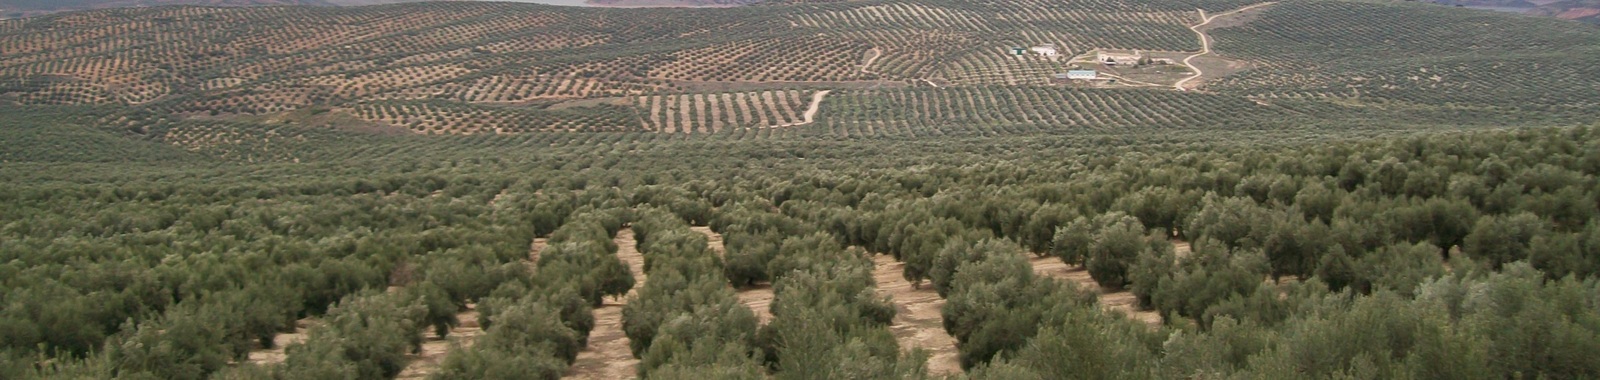 Reducir el daño en la hoja de olivo